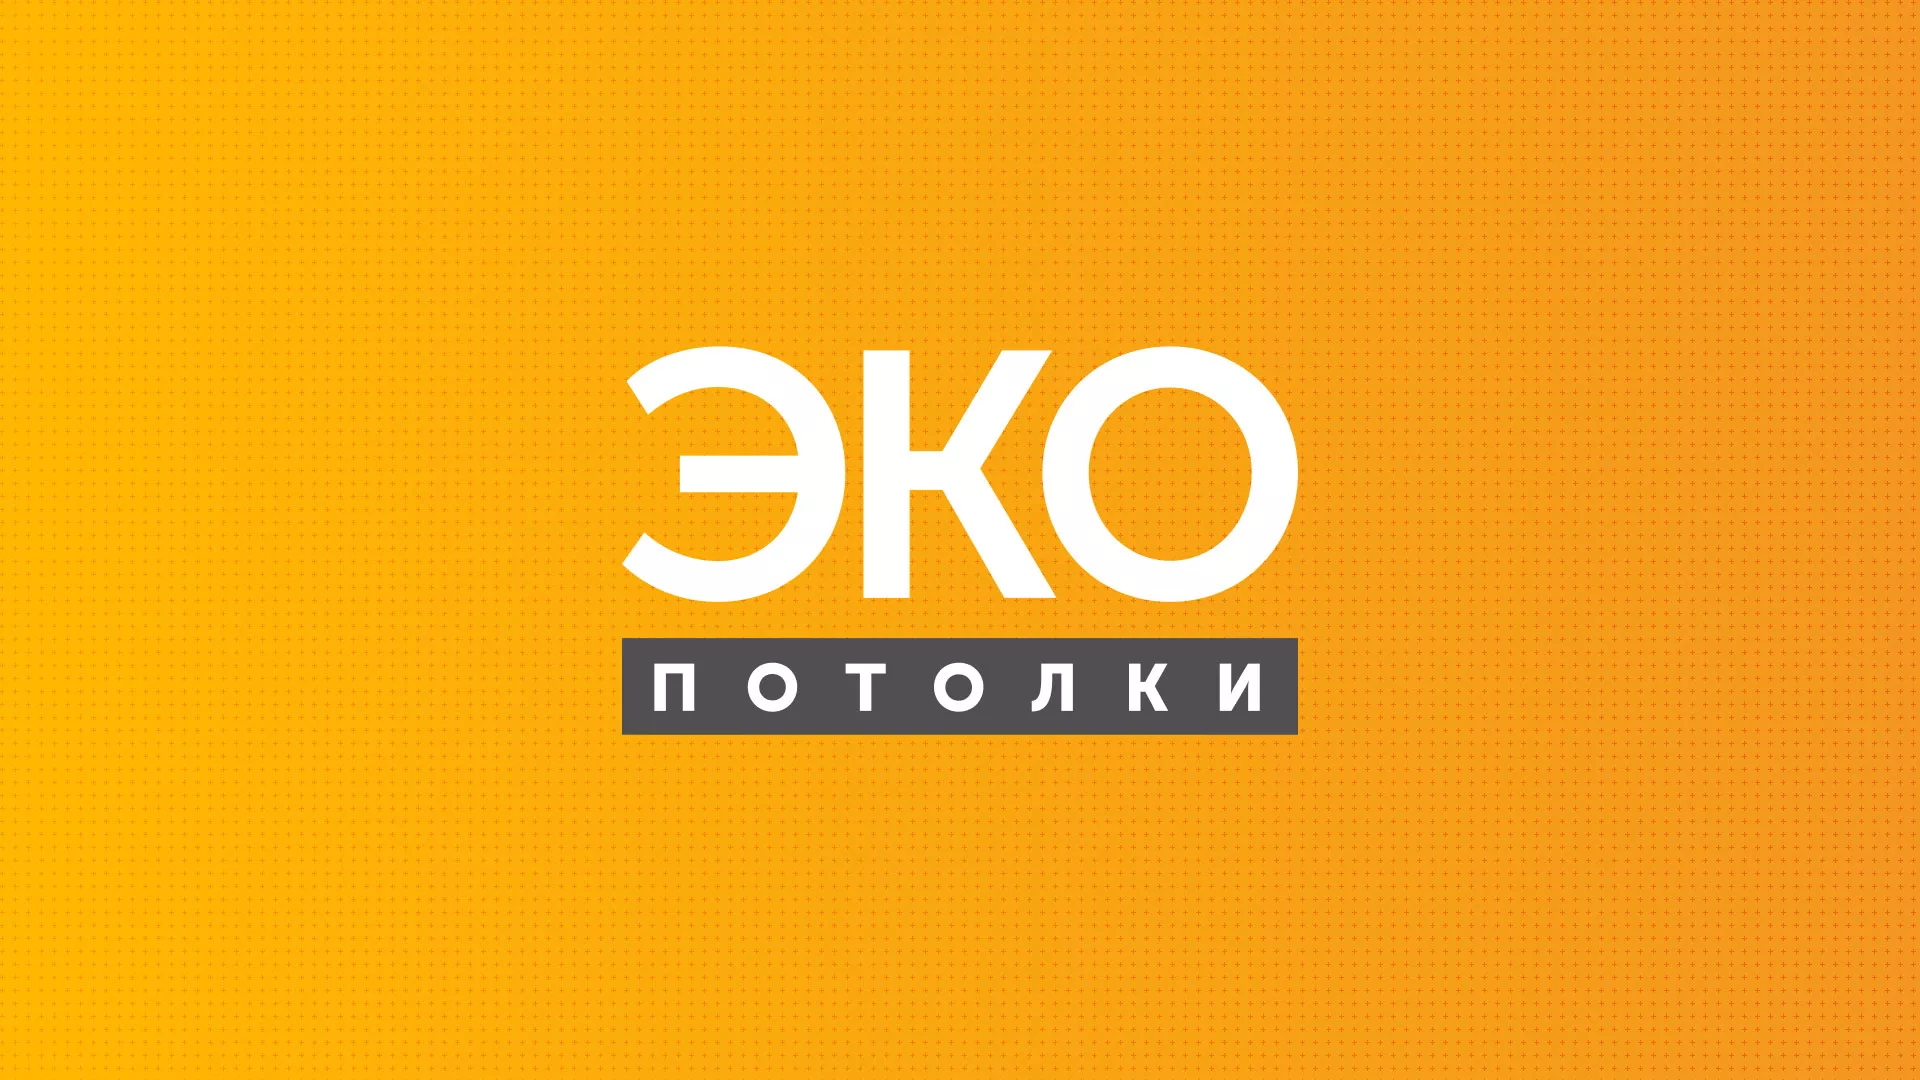 Разработка сайта по натяжным потолкам «Эко Потолки» в Опочке